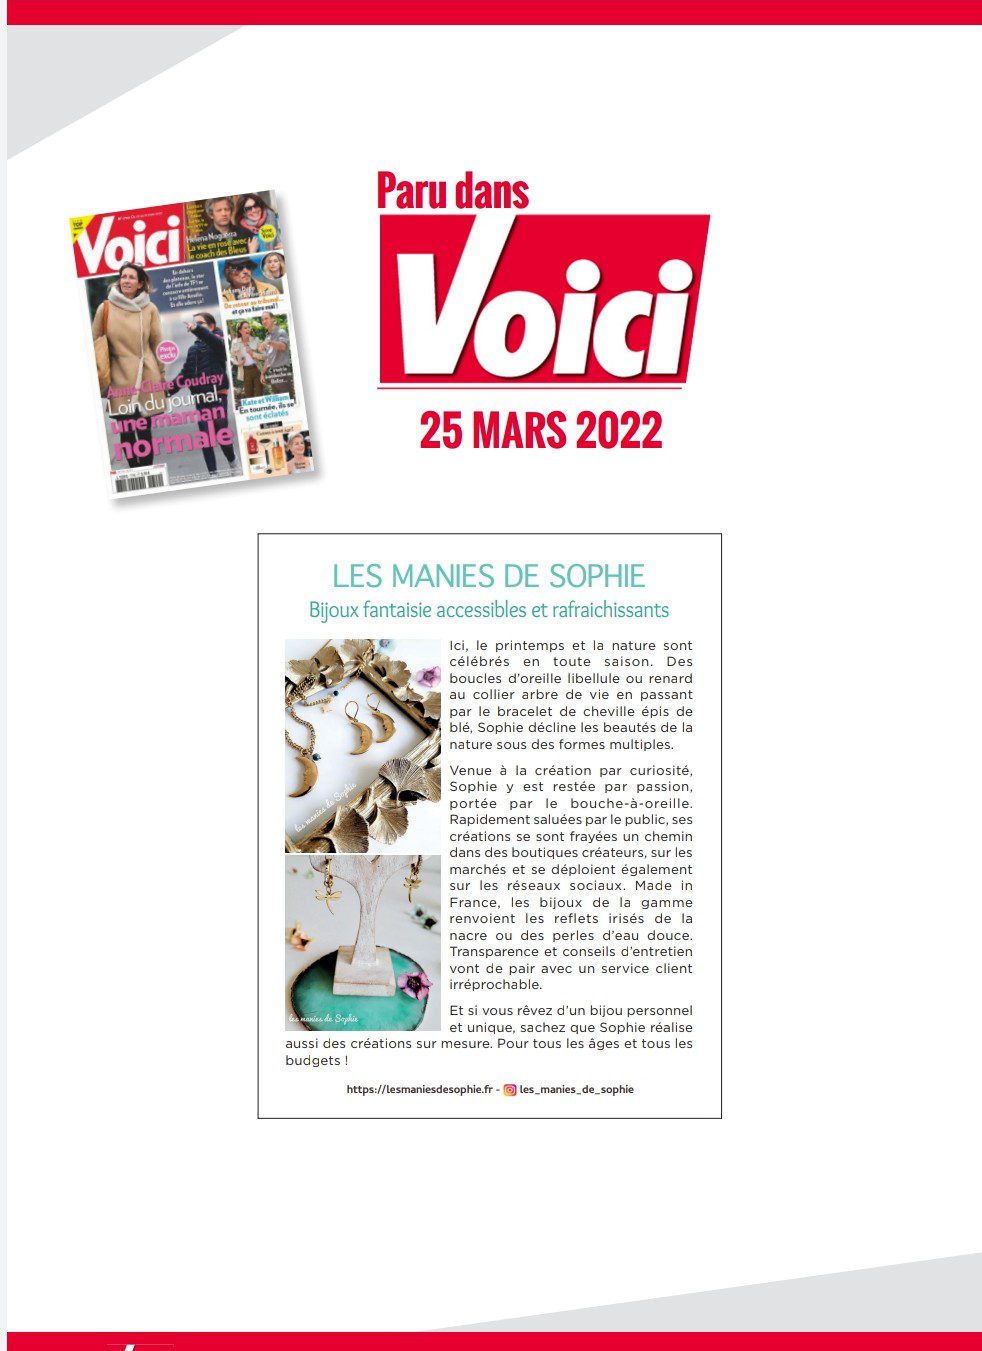 You are currently viewing Les manies de Sophie dans le magazine Voici!